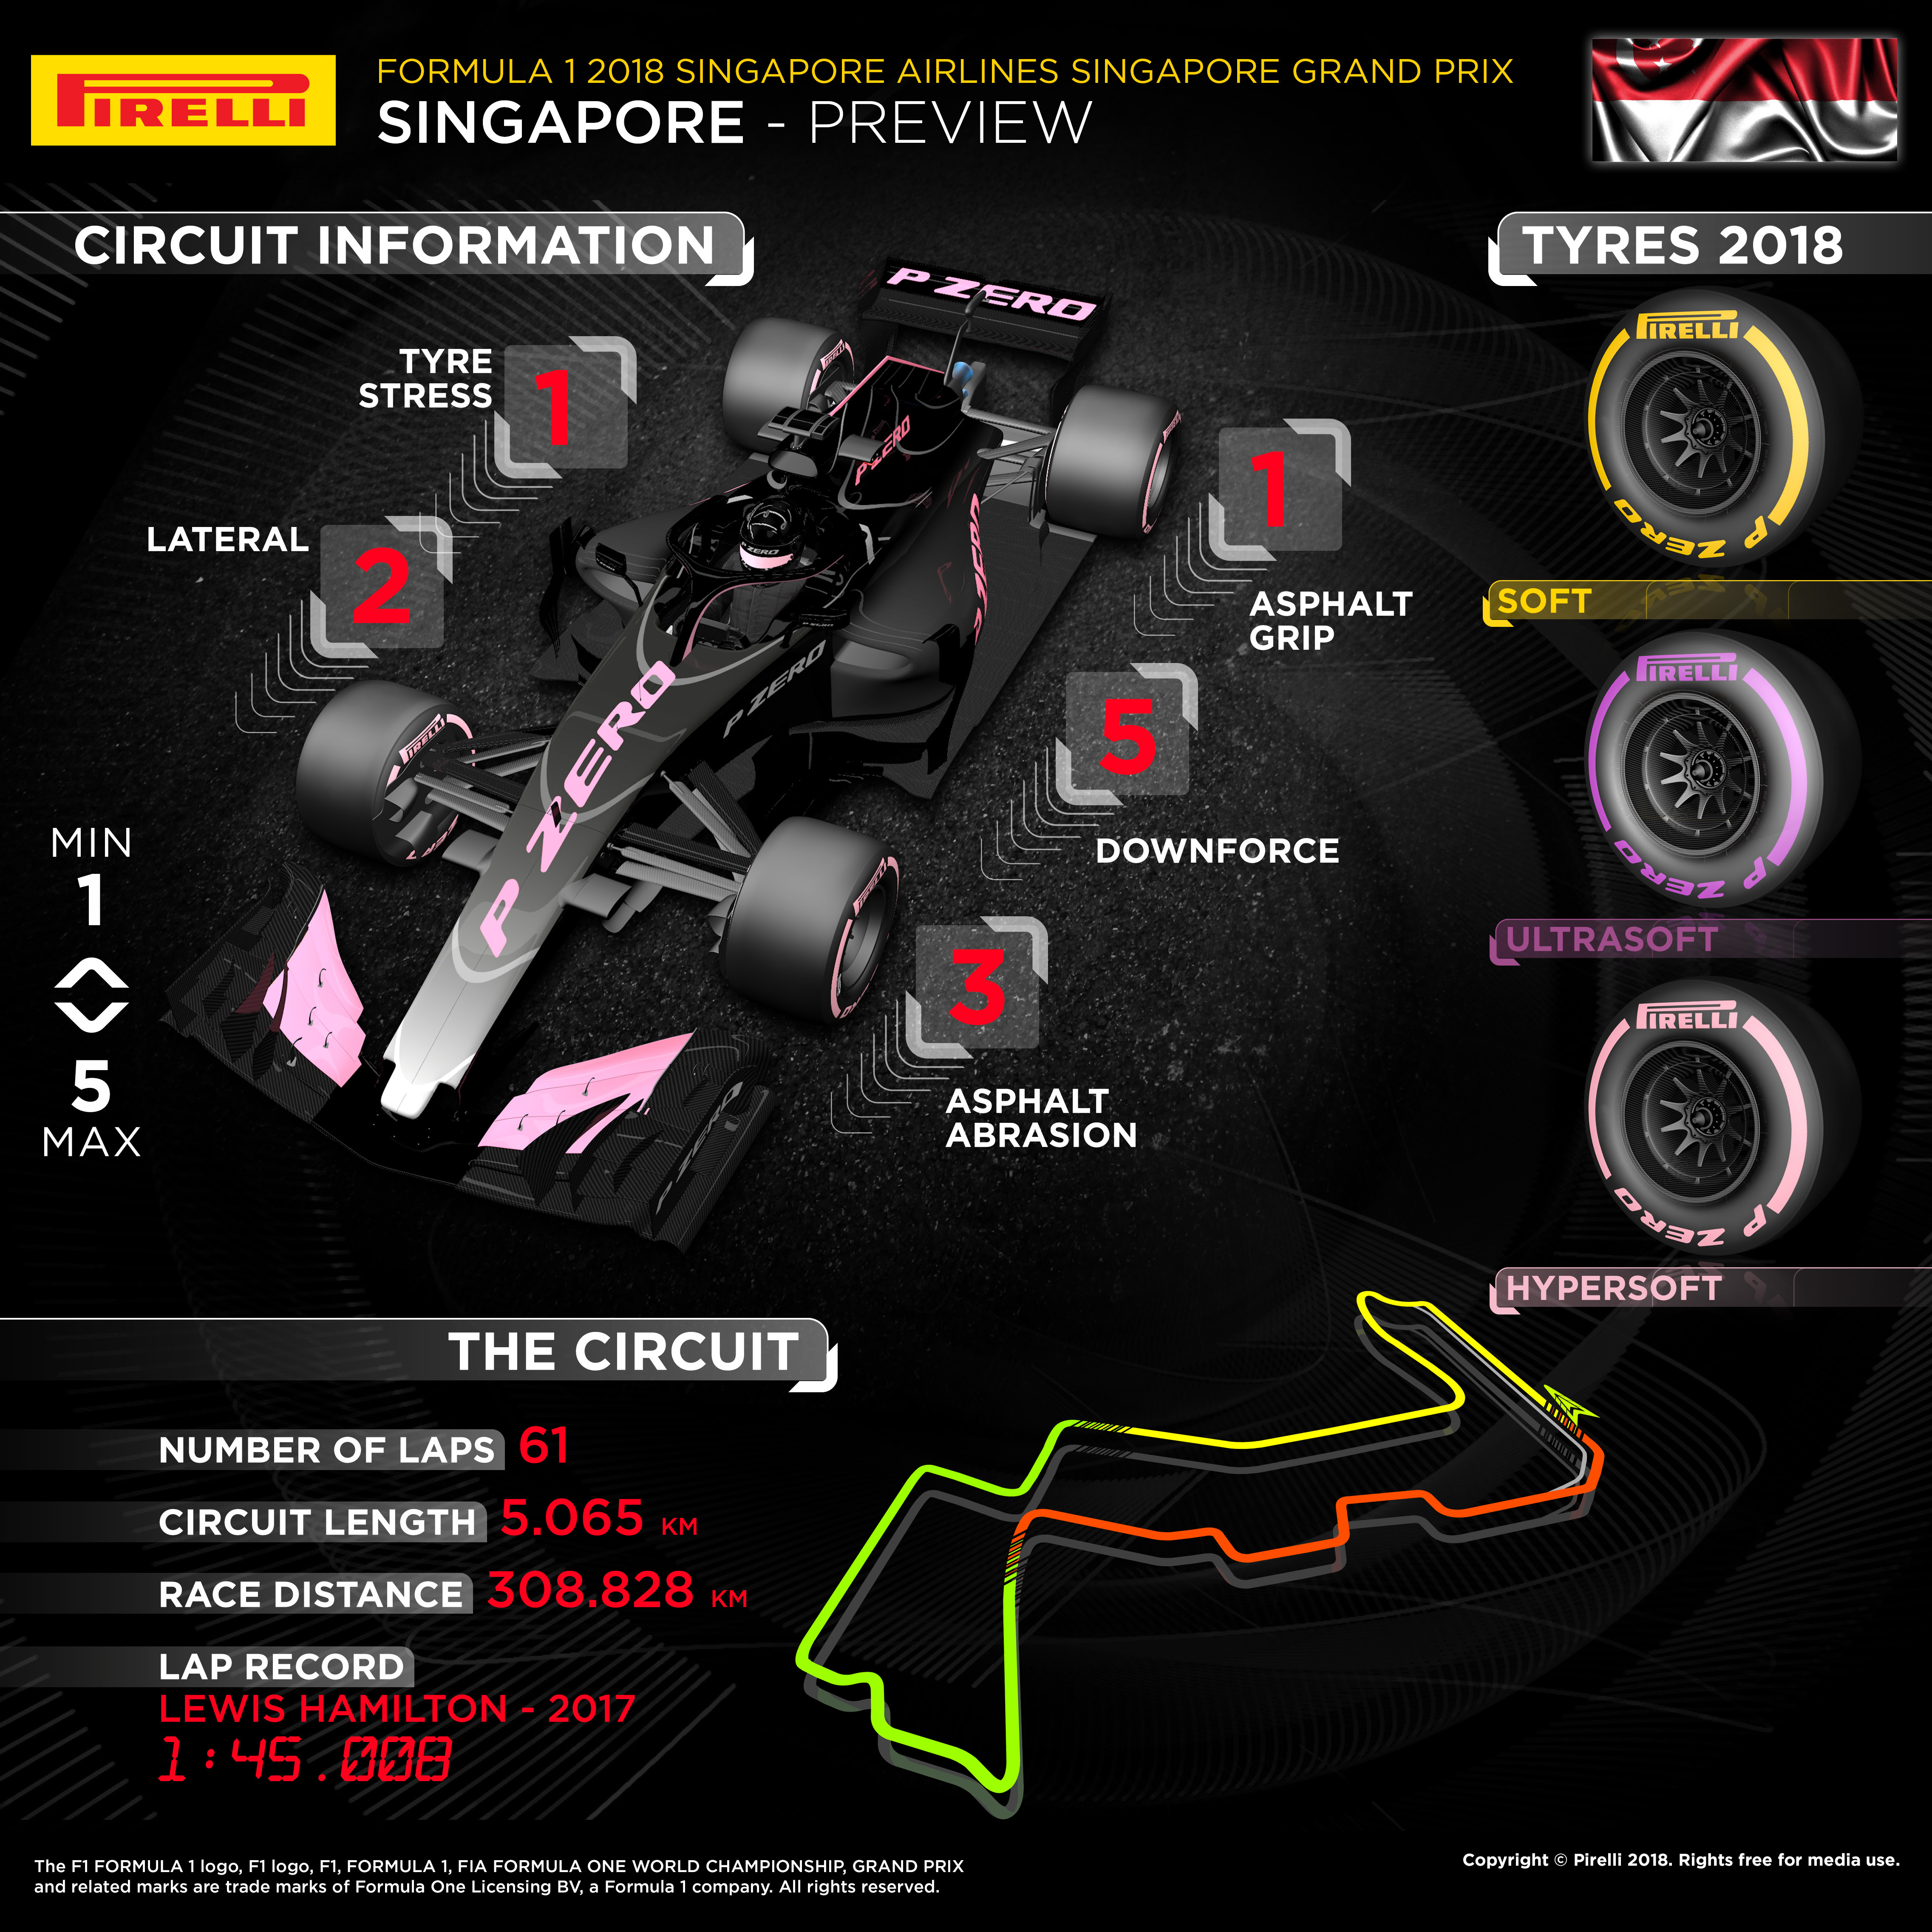 كل ما تحتاج معرفته عن جائزة سنغافورة الكبرى للفورمولا 1 2